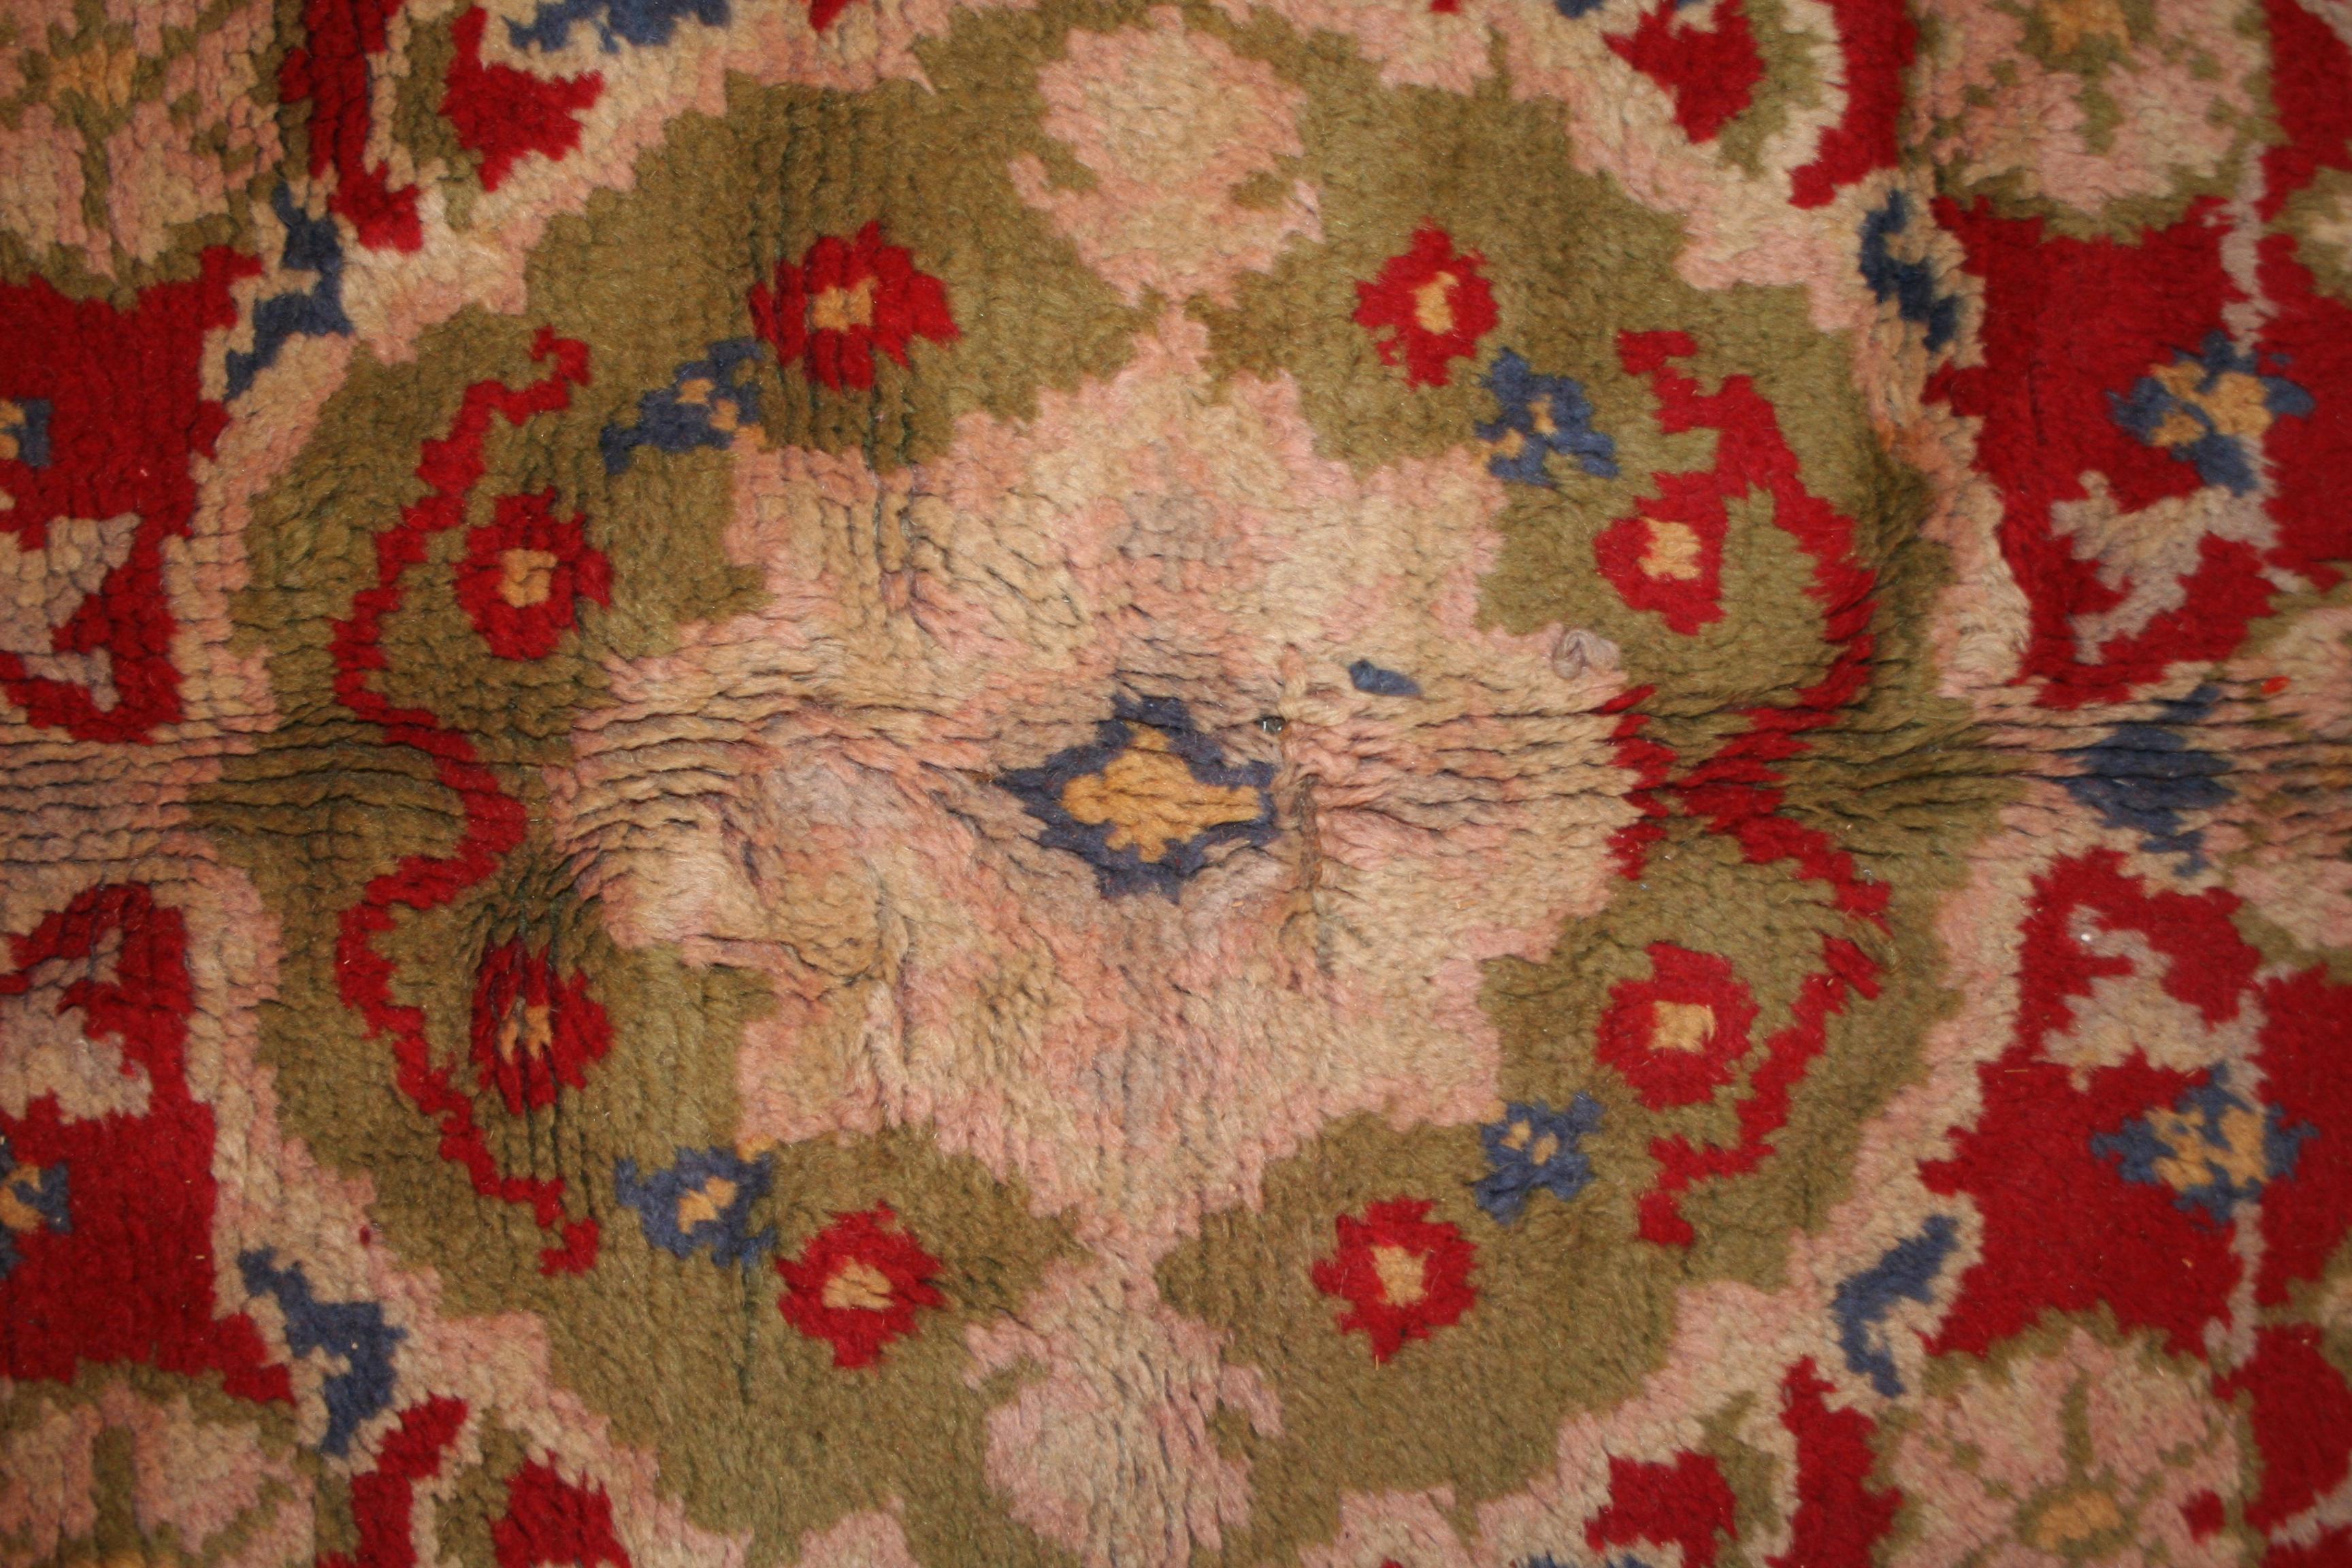 Ein seltener und ungewöhnlicher Jugendstilteppich mit einem zentralen Medaillon, das von orientalischen Teppichen inspiriert ist und ein leuchtend rotes, offenes Feld dominiert. Die Ecken sind mit Paisley-Motiven geschmückt und die breite Bordüre